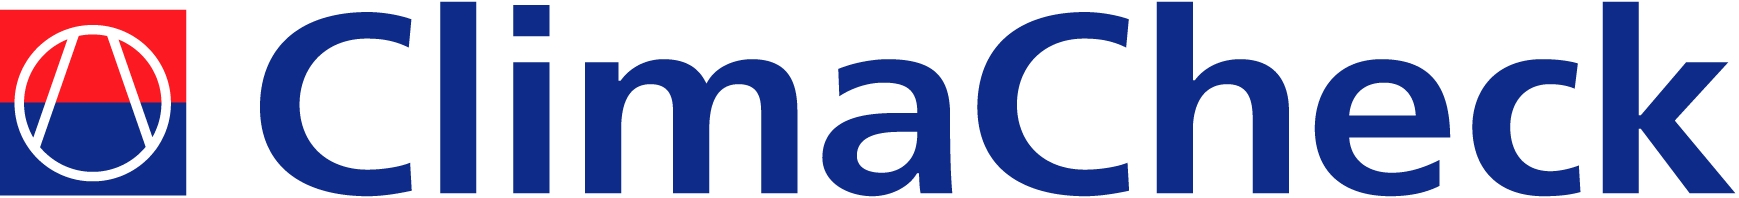 Logotipo Uno